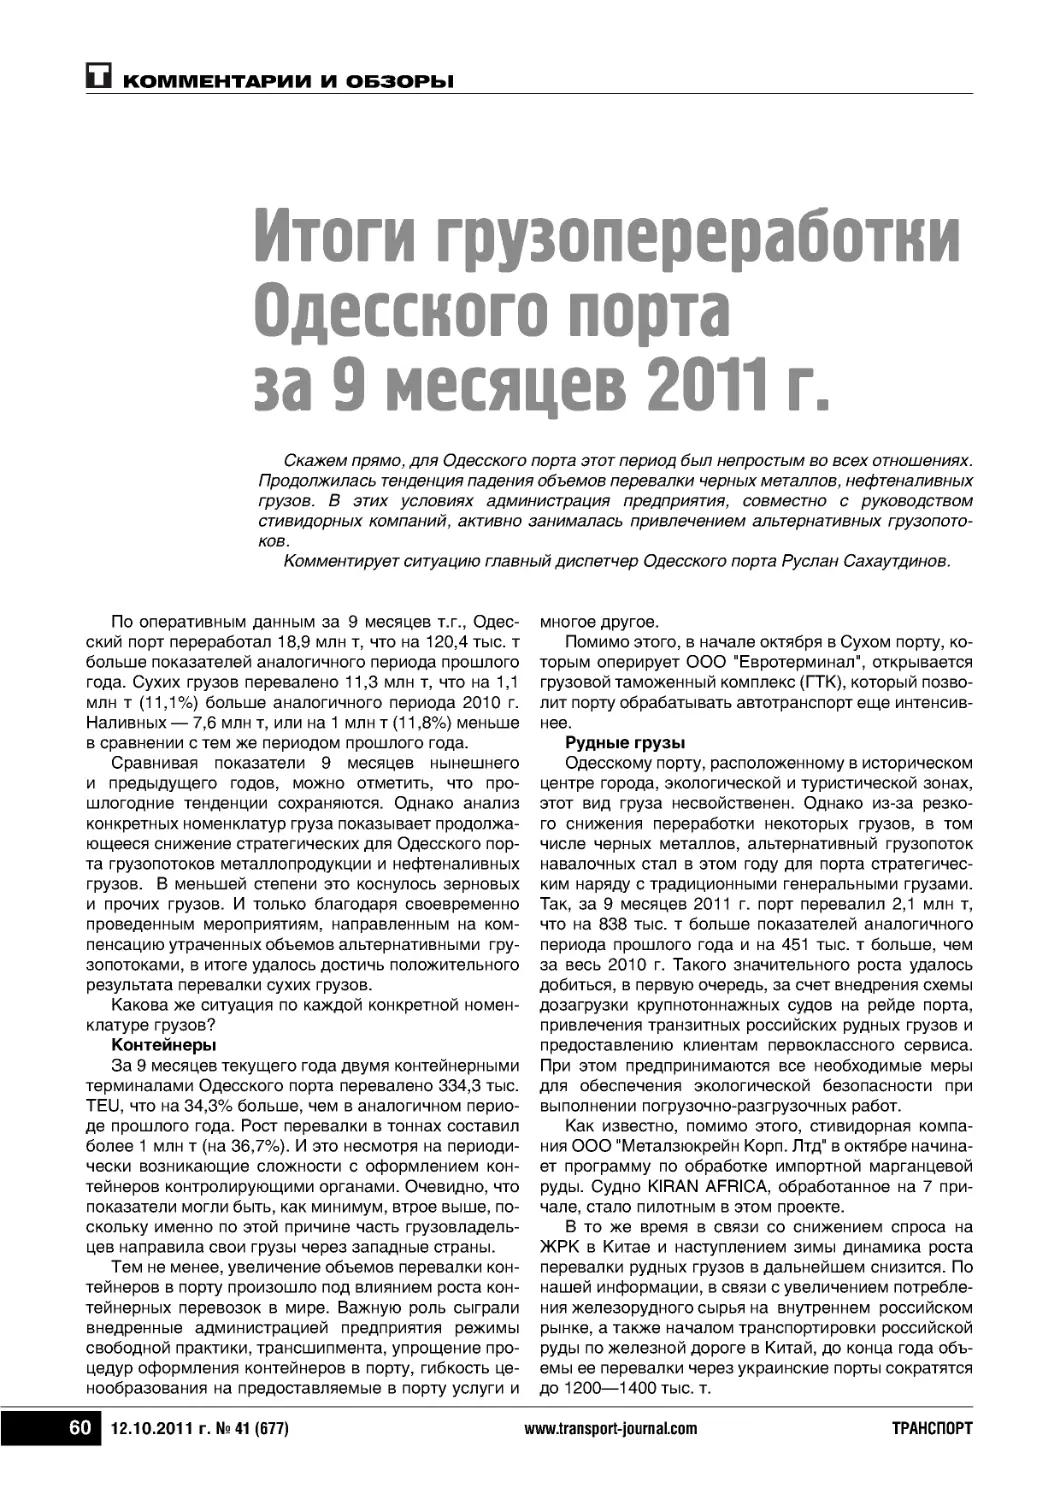 Итоги грузопереработкиОдесского портаза 9 месяцев 2011 г.